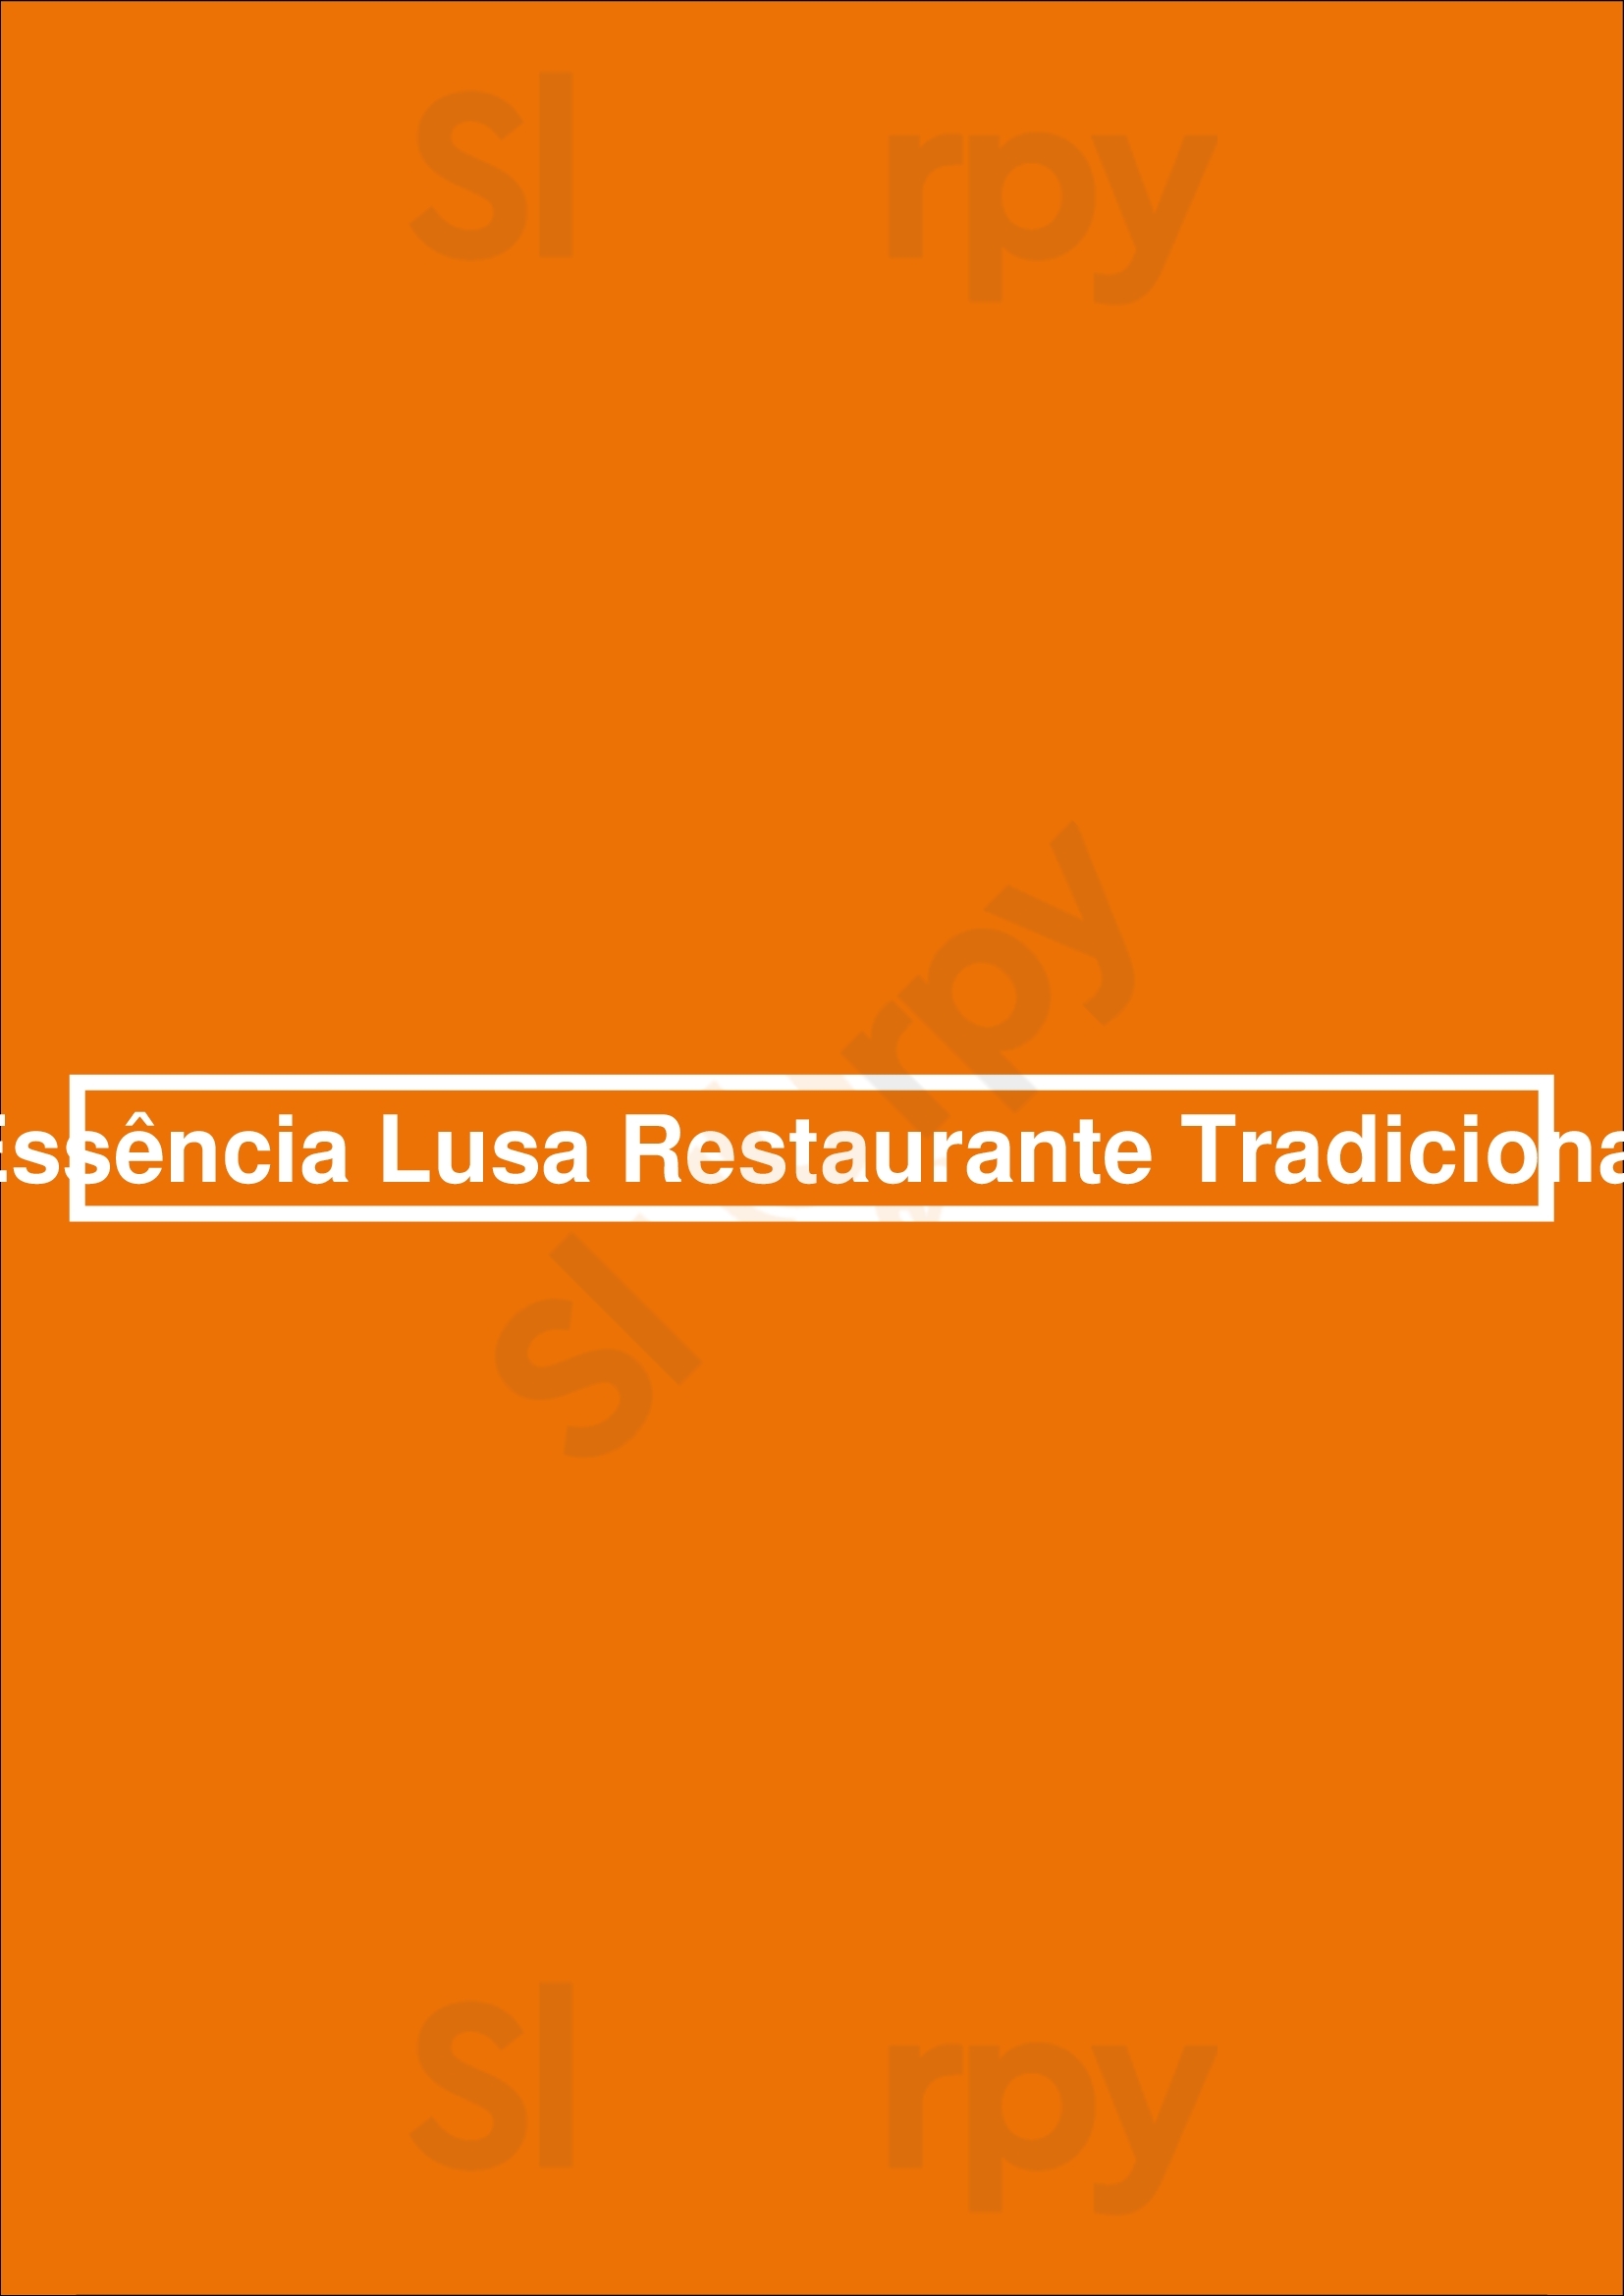 Essência Lusa Restaurante Tradicional Porto Menu - 1